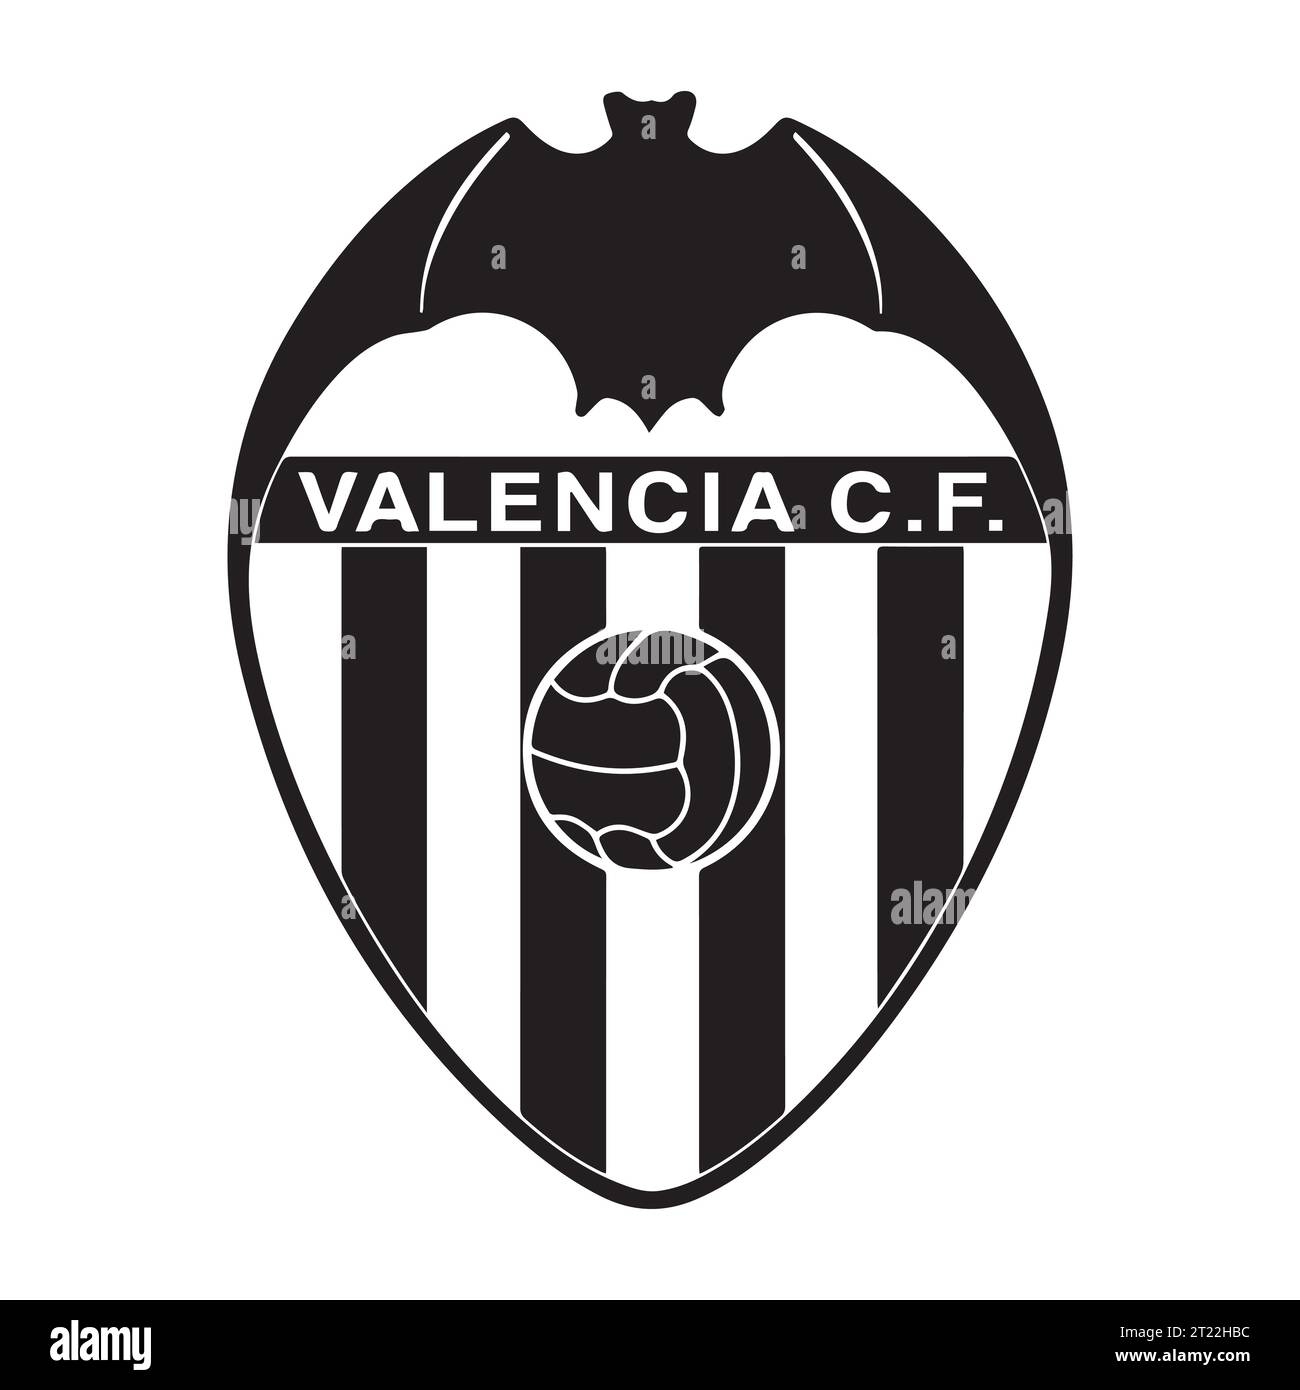 Valencia CF Logo bianco e nero squadra di calcio professionistica spagnola, illustrazione vettoriale immagine astratta in bianco e nero modificabile Illustrazione Vettoriale